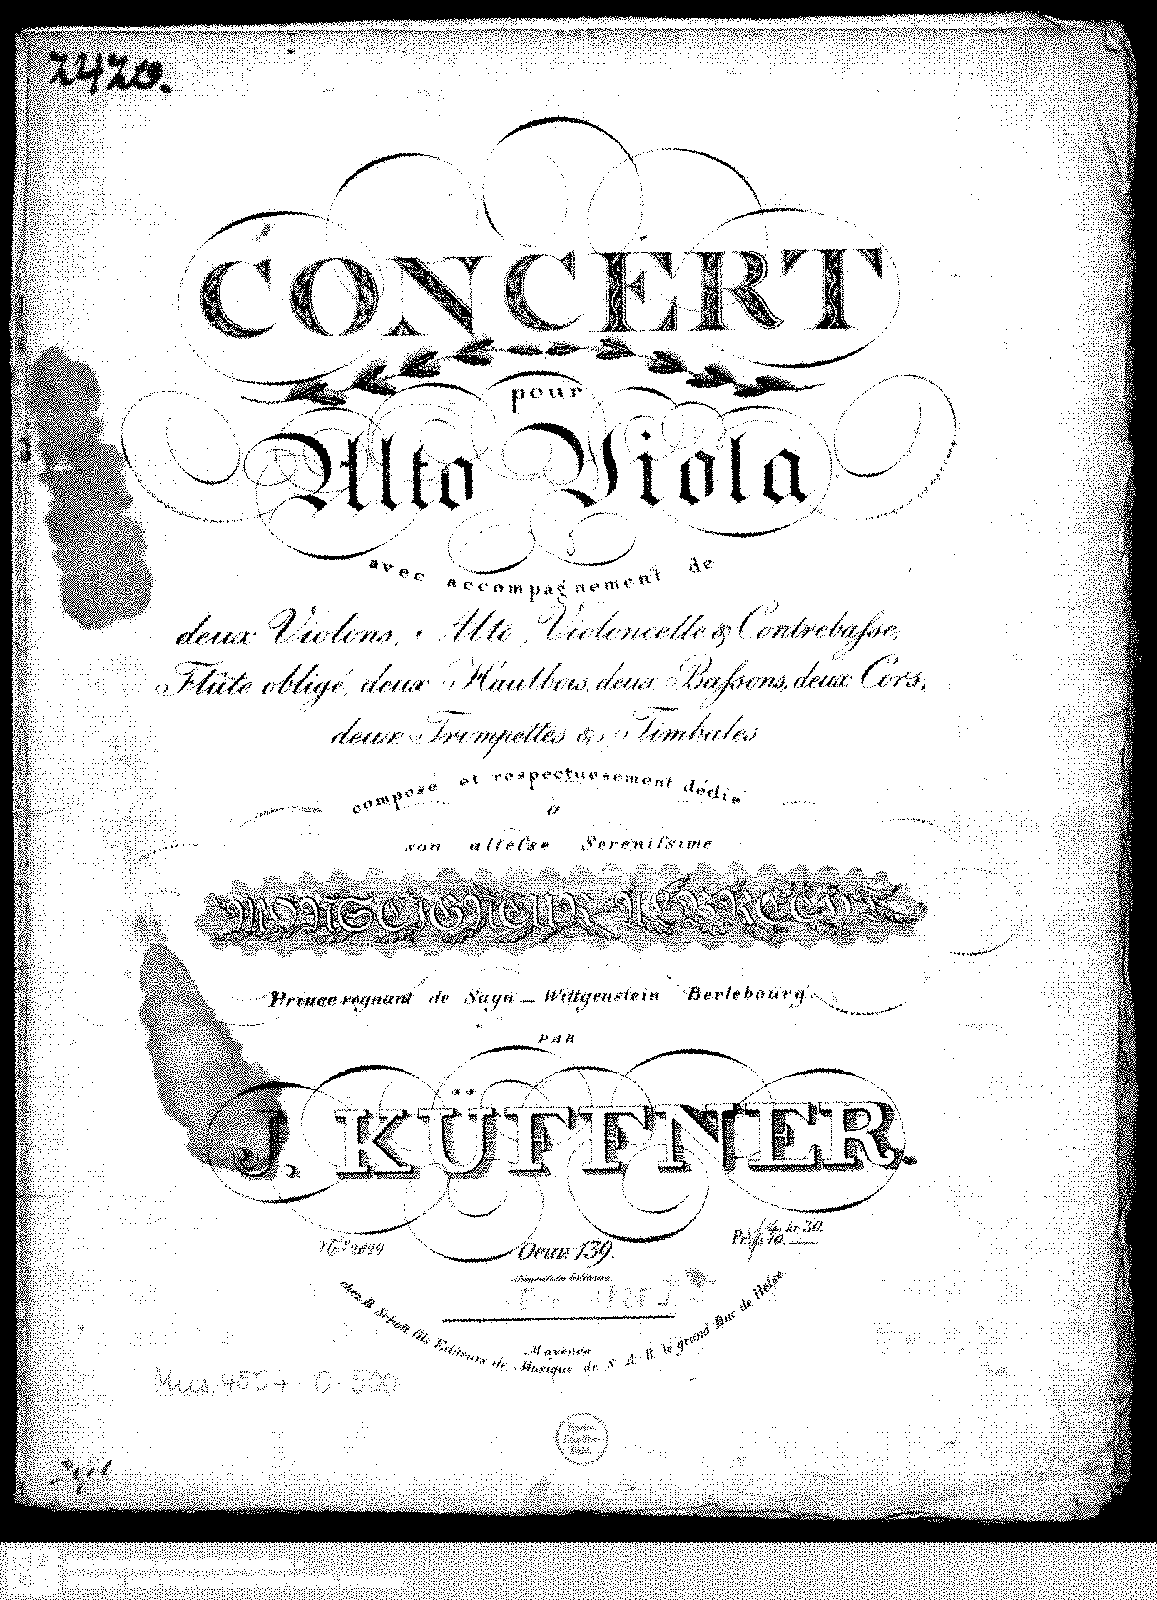 walton violin concerto imslp